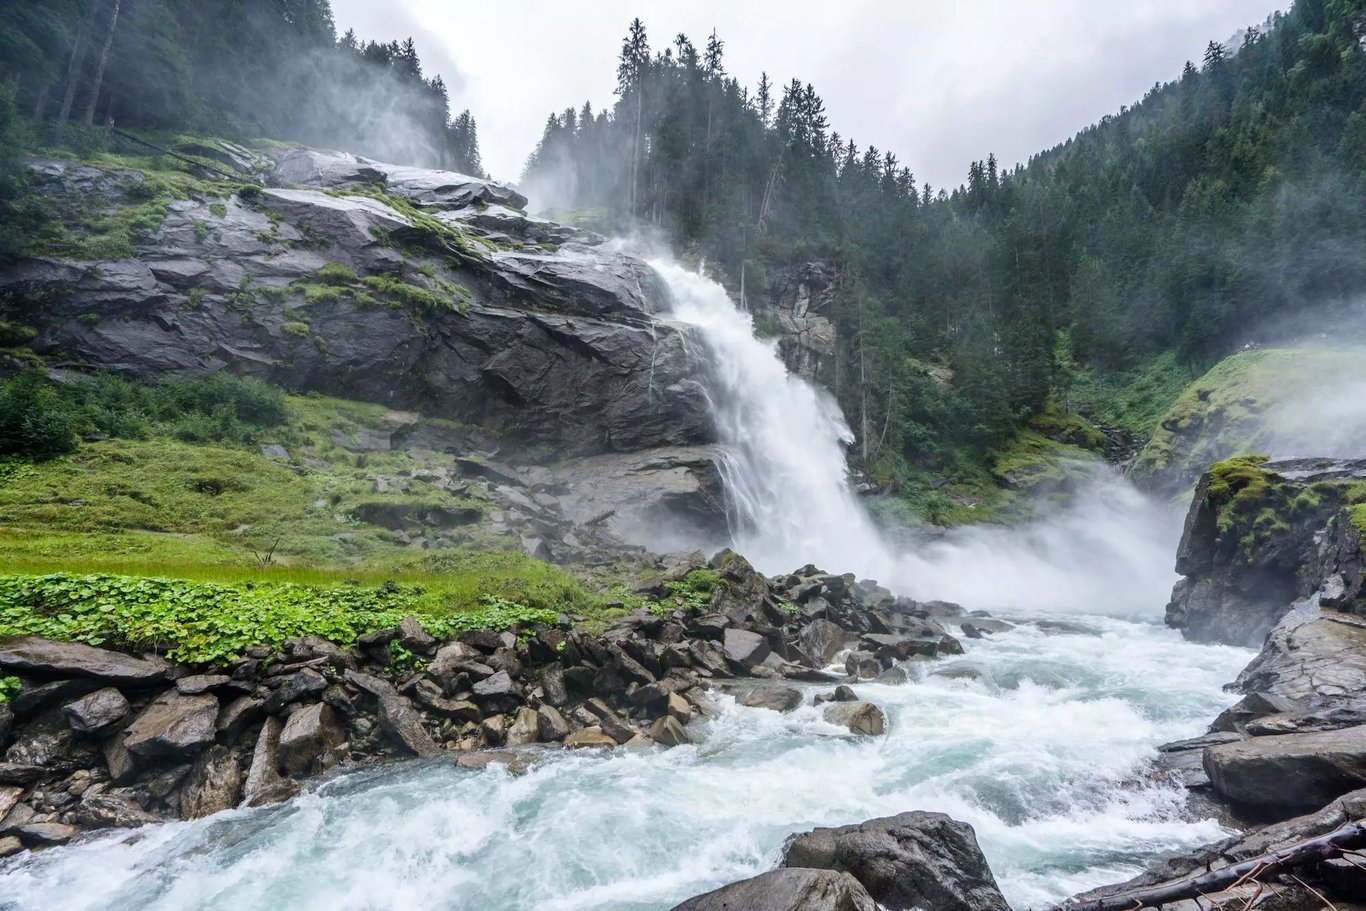 Krimml Falls Guide 2022 - Europe's No1 Waterfall